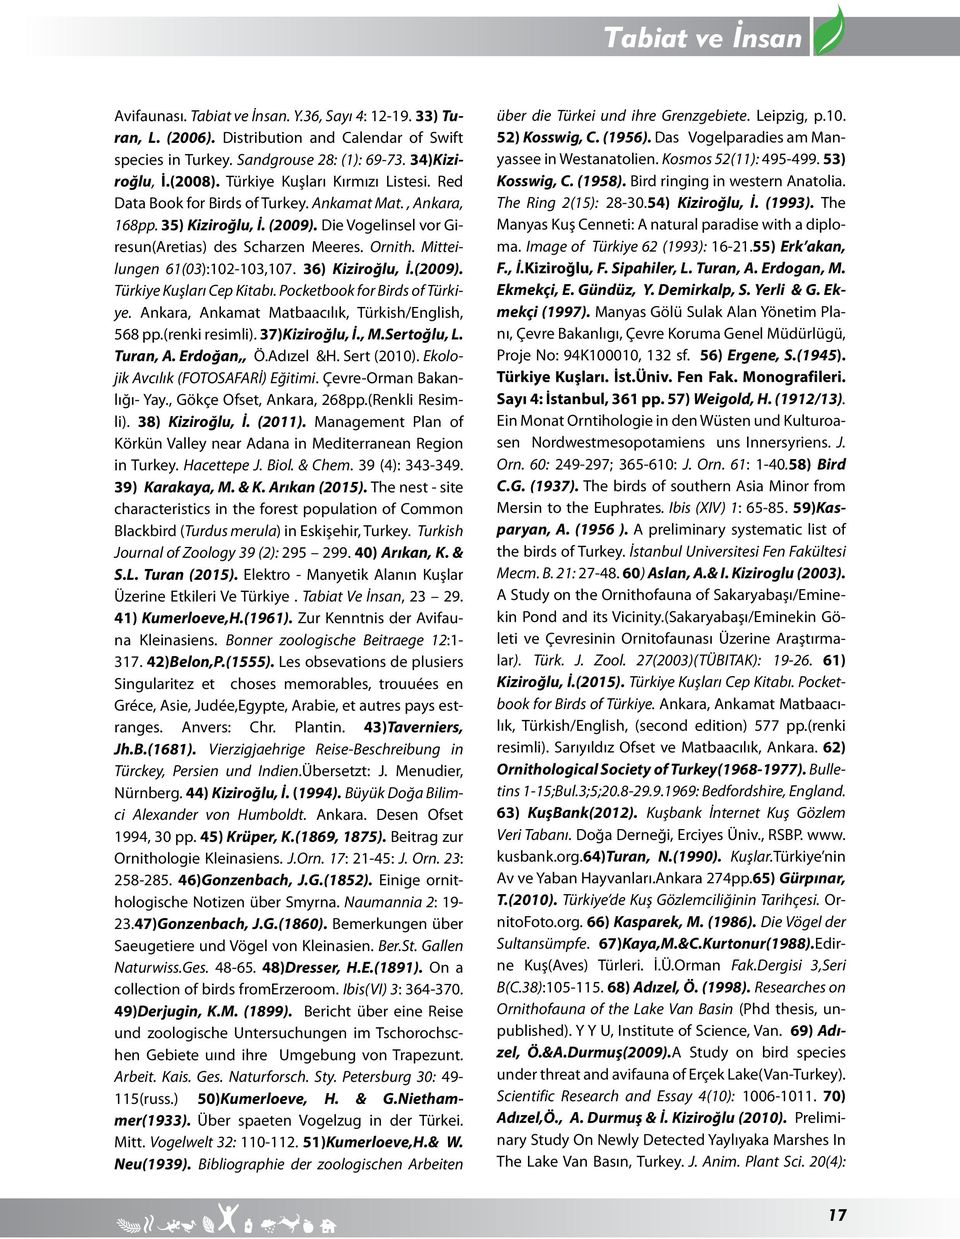 Mitteilungen 61(03):102-103,107. 36) Kiziroğlu, İ.(2009). Türkiye Kuşları Cep Kitabı. Pocketbook for Birds of Türkiye. Ankara, Ankamat Matbaacılık, Türkish/English, 568 pp.(renki resimli).